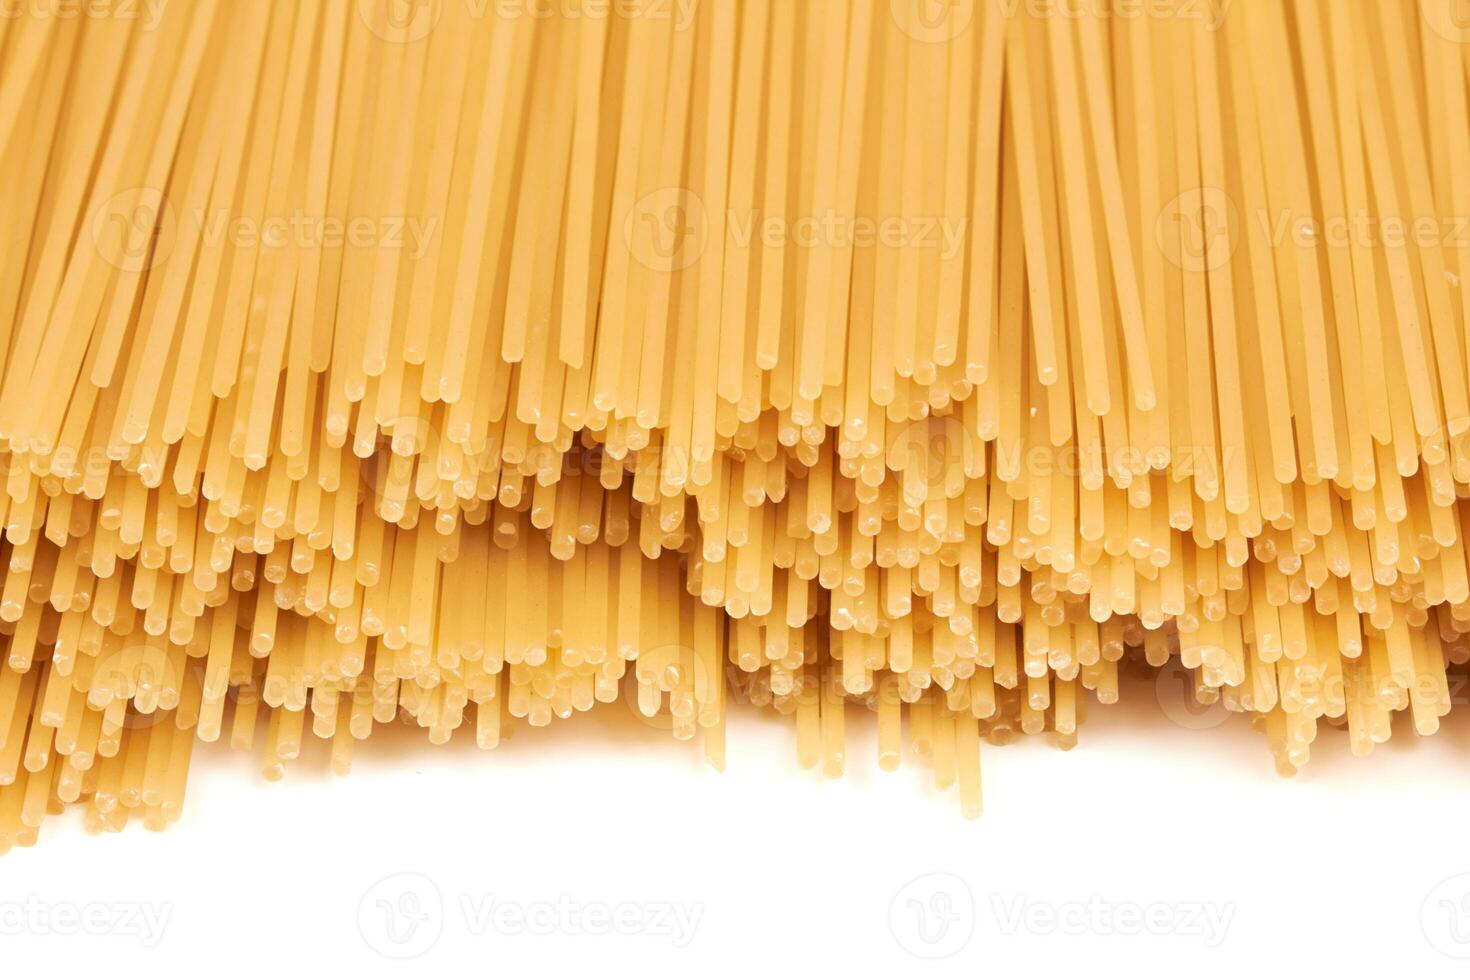 spaghetti on white photo